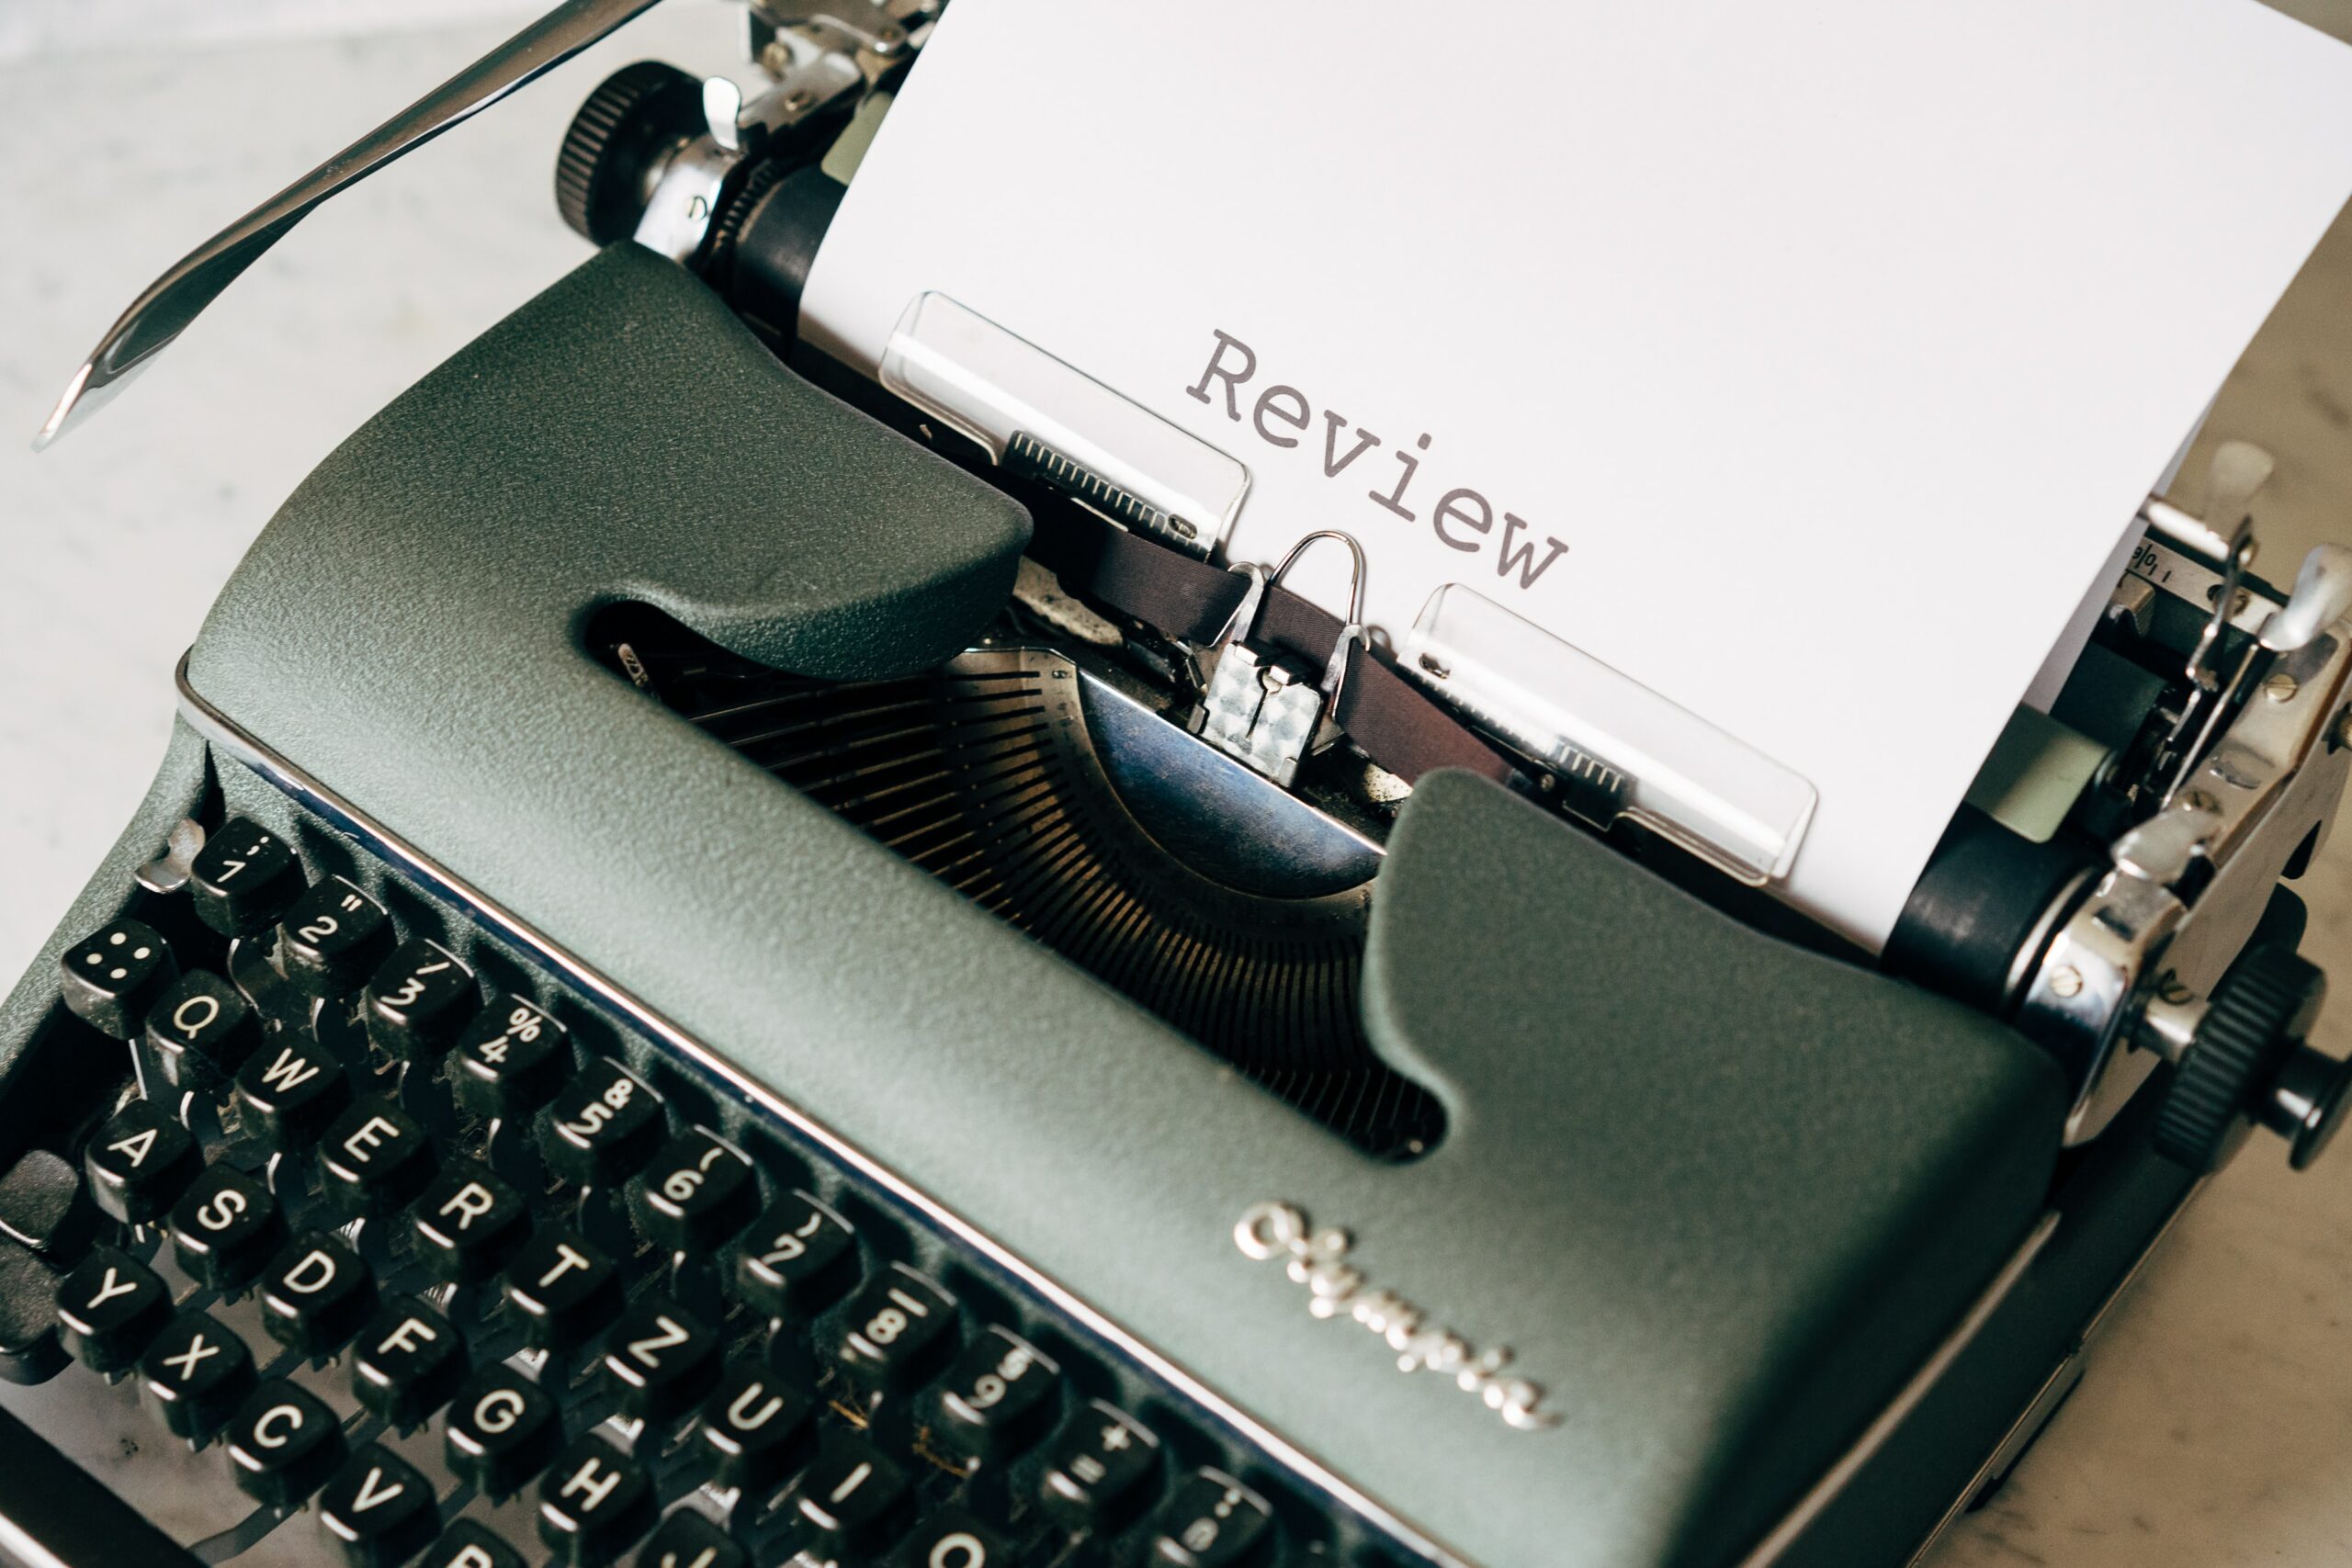 Grüne Schreibmaschine mit einem Blatt darin. Darauf steht der Begriff "Review"